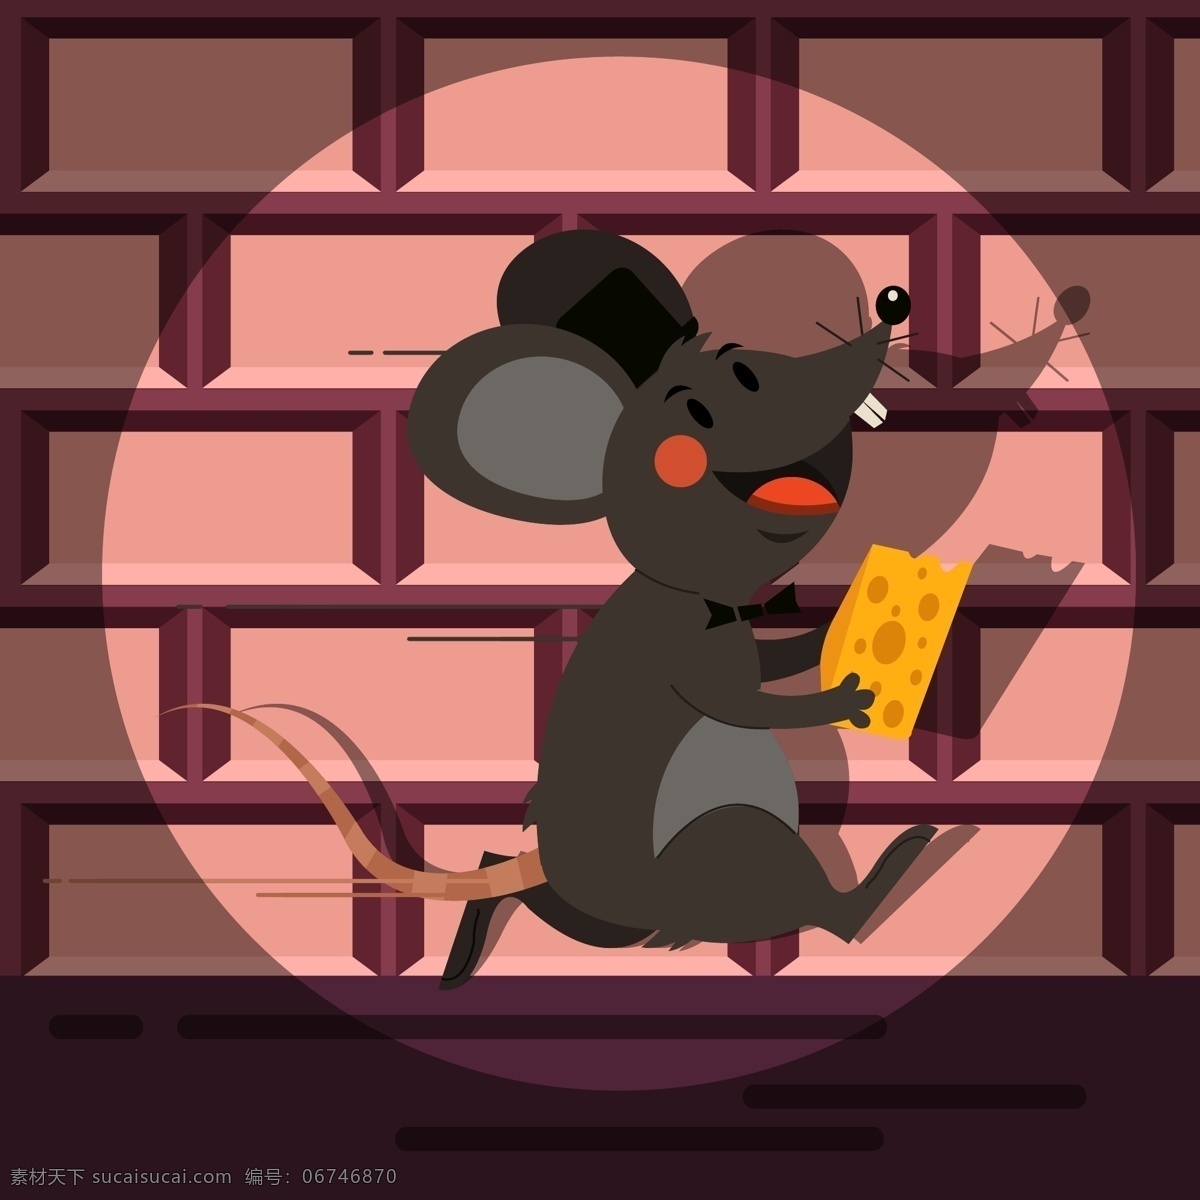 创意偷走奶酪 的老鼠 跑 灯光 创意 偷盗 奶酪 老鼠 砖墙 逃跑 矢量图 ai格式